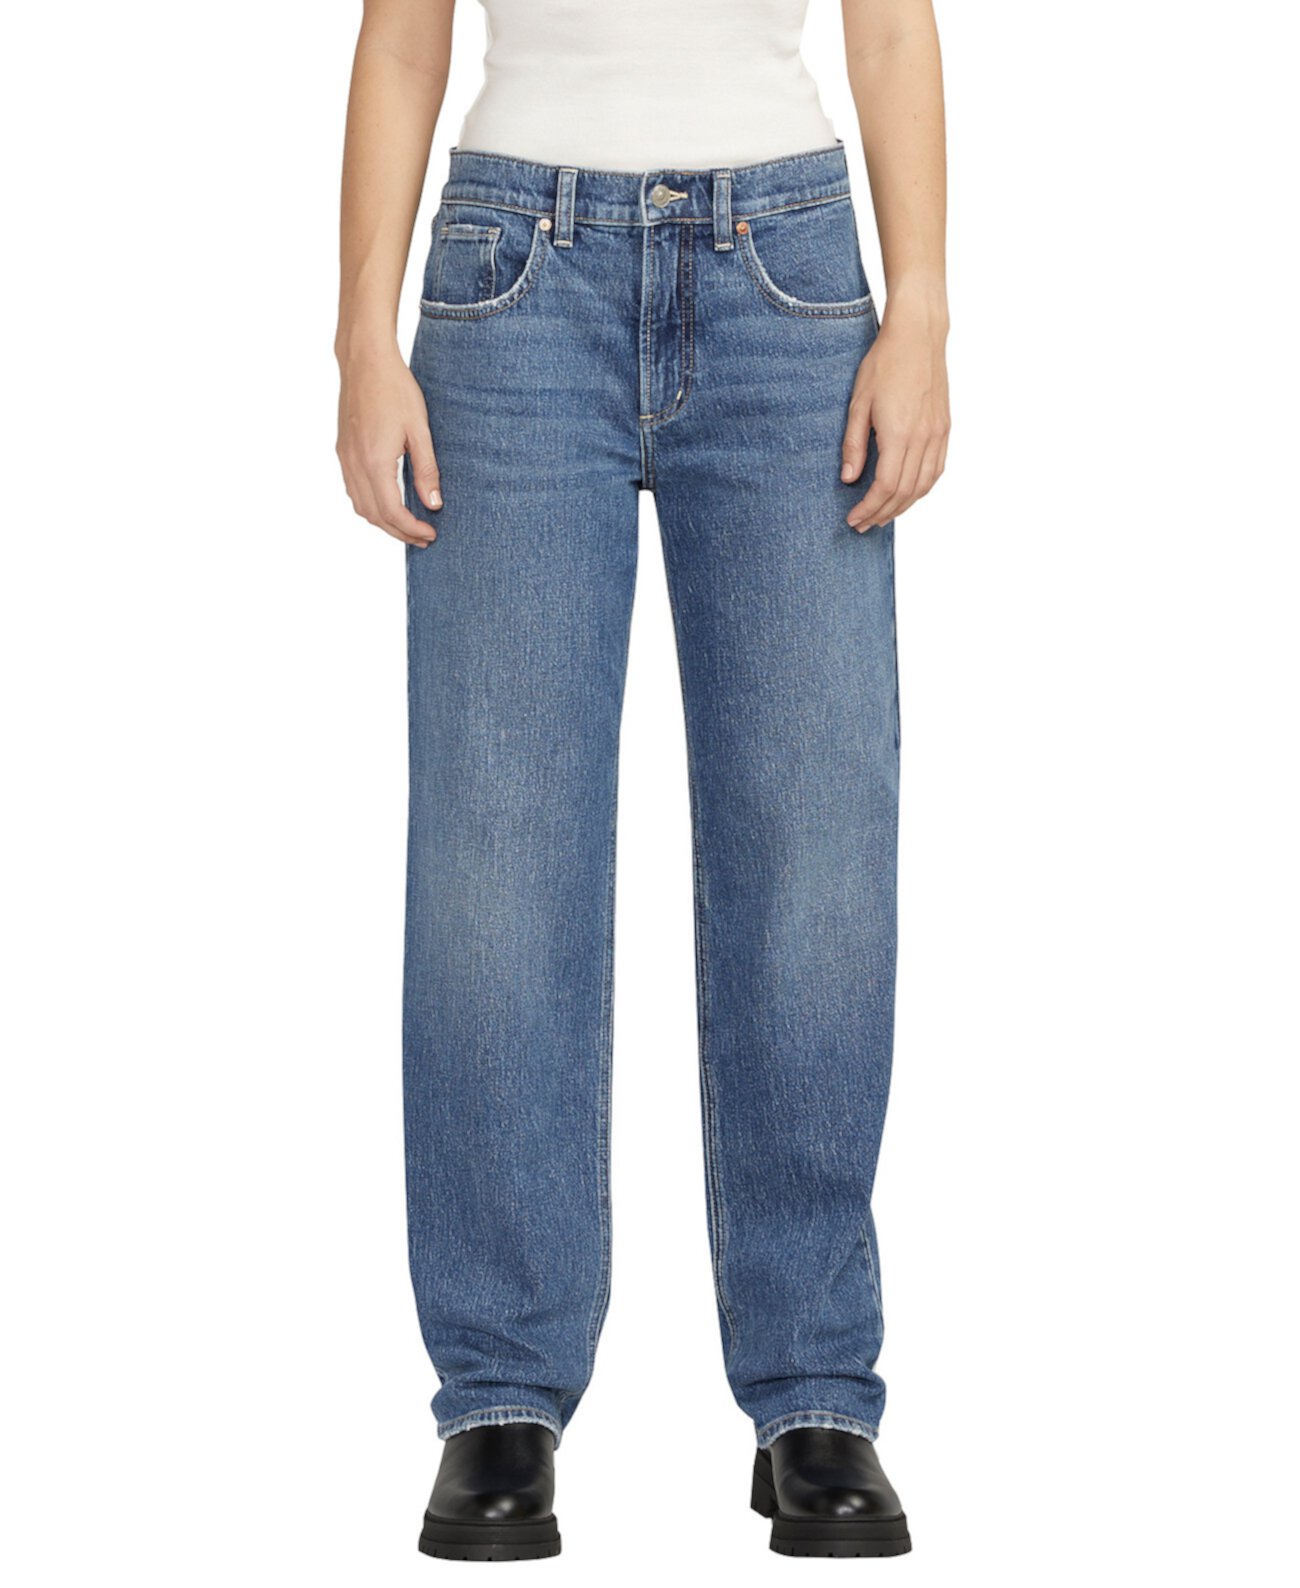 Женские прямые джинсы с низкой посадкой и средней посадкой Silver Jeans Co.